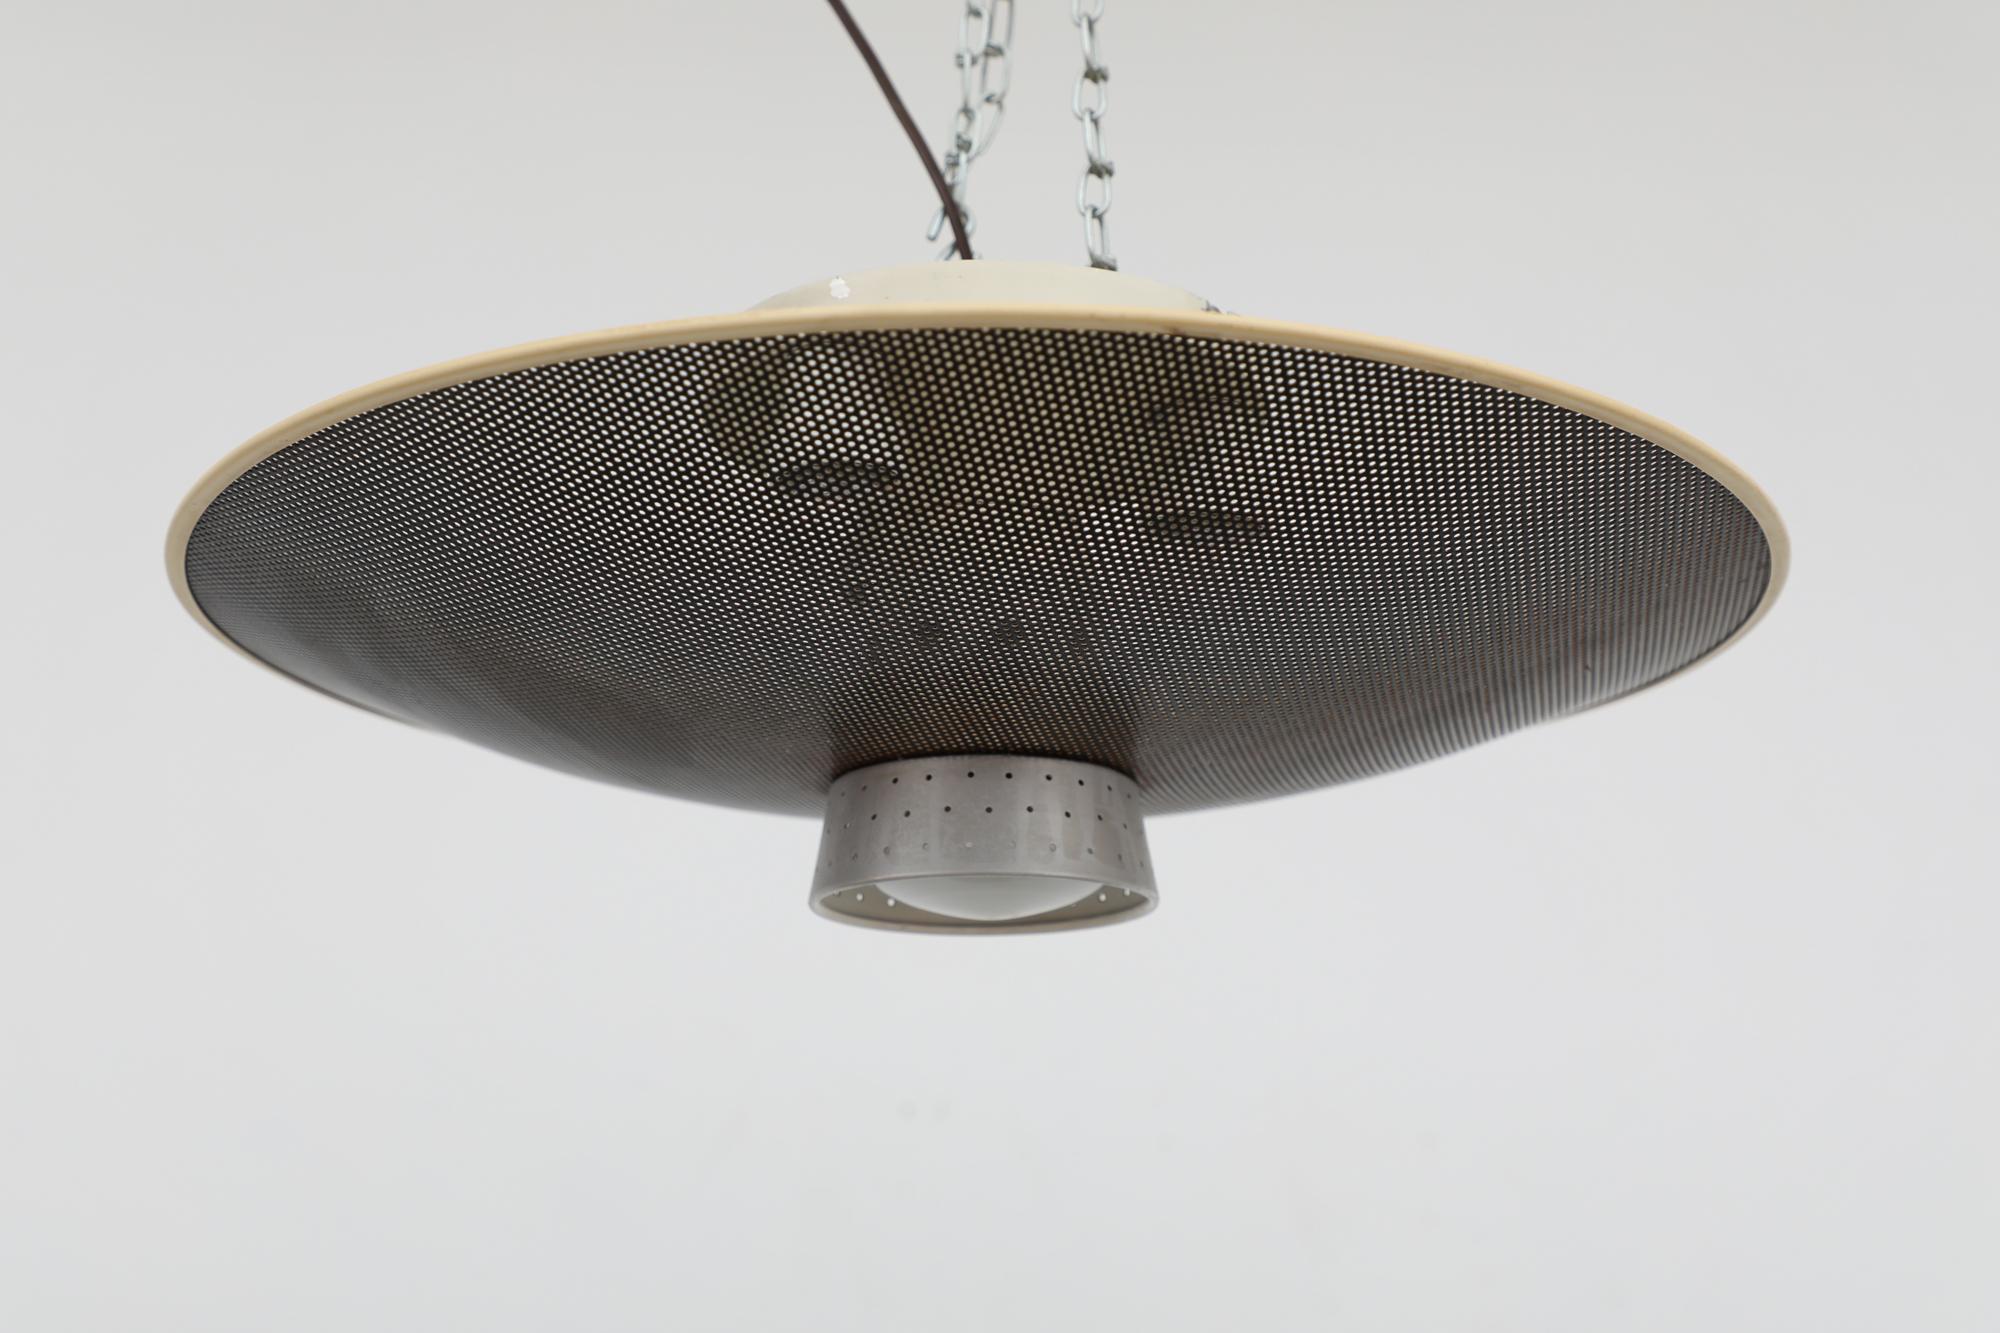 Deckenleuchte aus den 1960er Jahren, entworfen von Louis Kalff für Philips. Die Leuchte hat einen perforierten Kuppelschirm, drei obere Glühbirnen und eine einzelne nach unten gerichtete Fassung, die in einem halbperforierten Aluminiumschirm